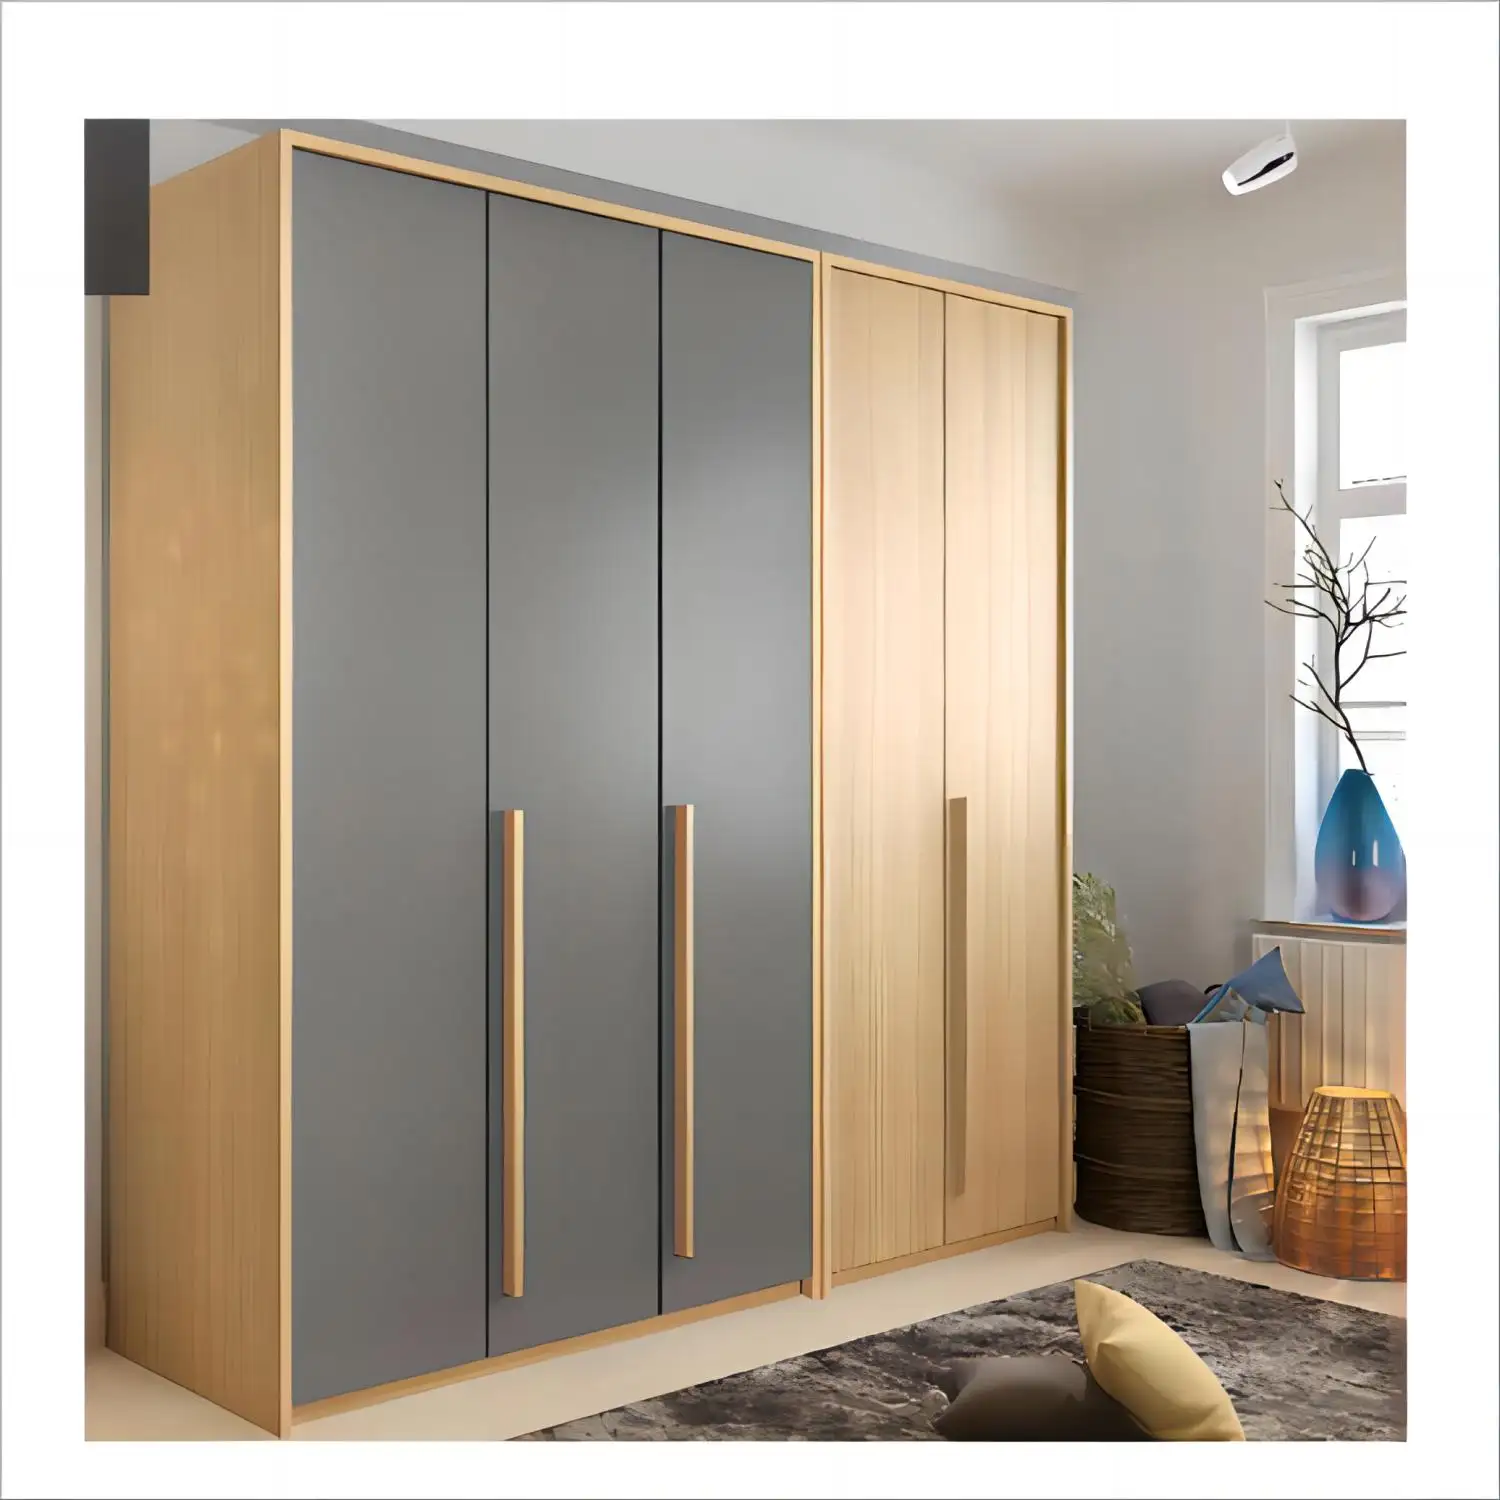 Large storage modern design 5 doors wooden wardrobe without door for bedroom closet wooden almirah designs